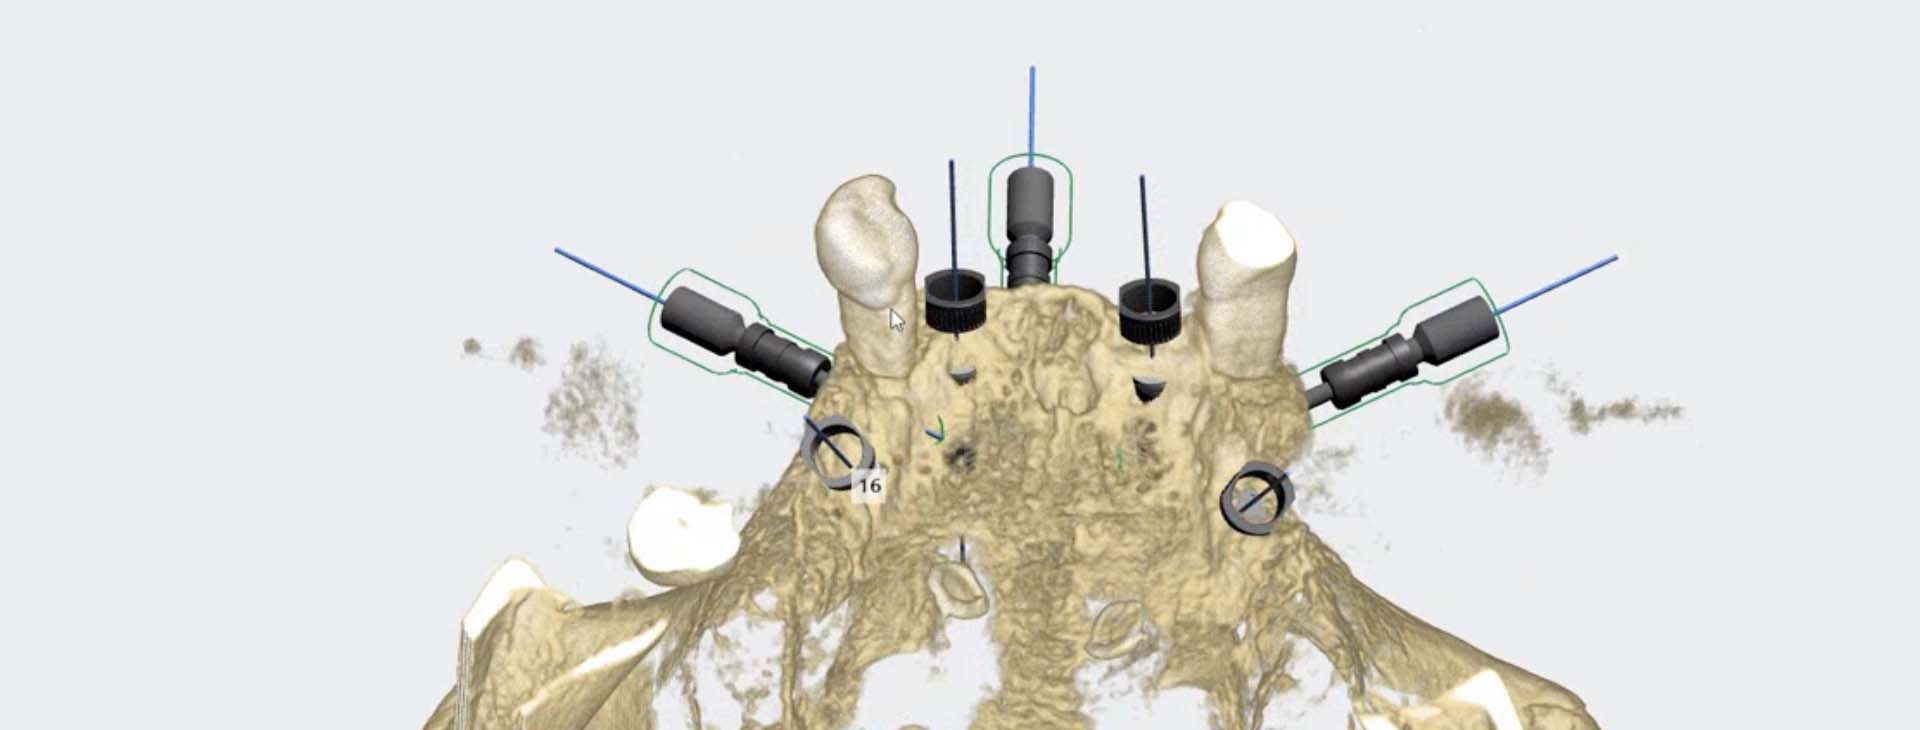 Dental implants for edentulous patients